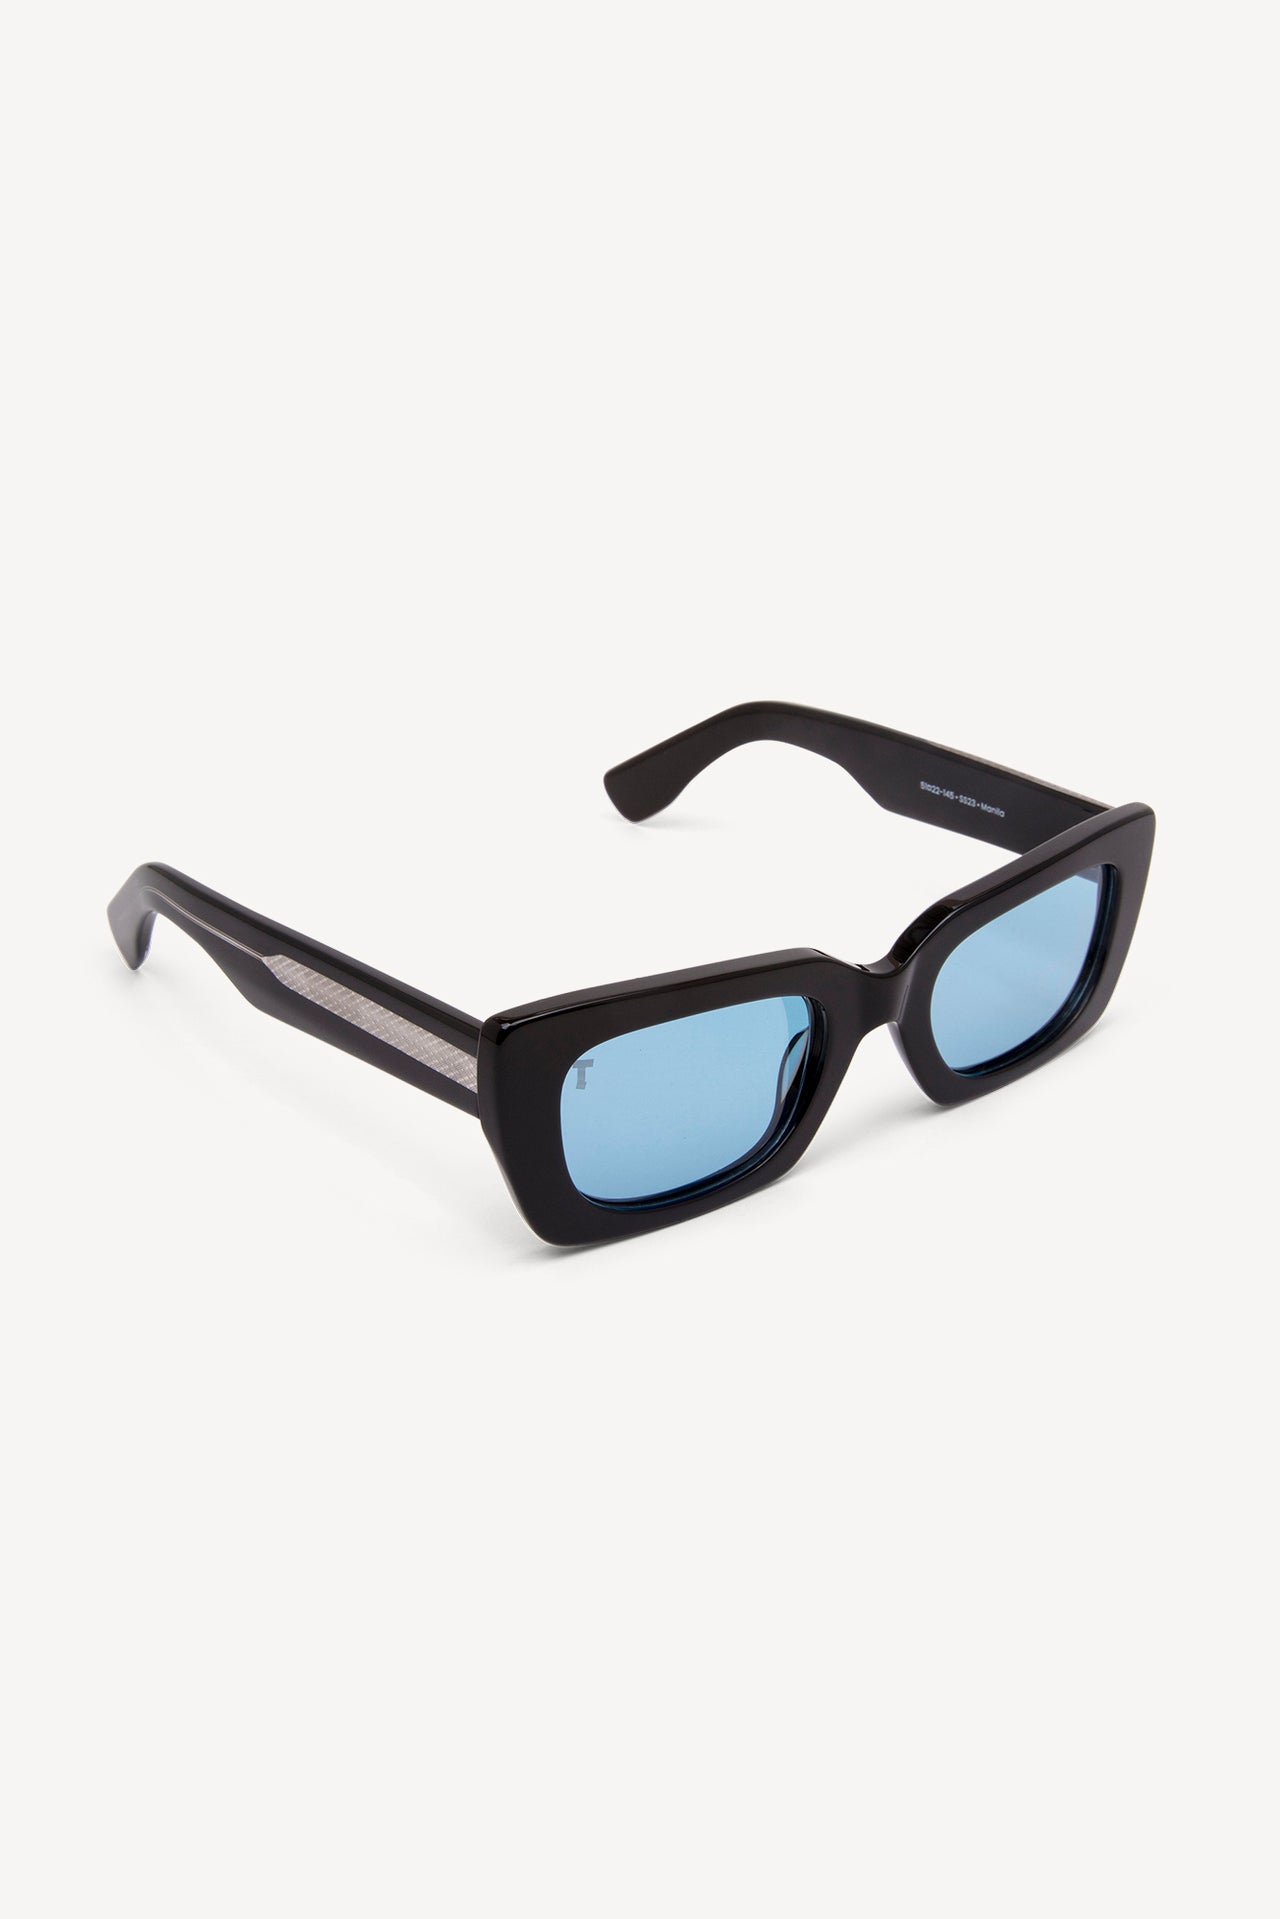 TOATIE Manila Rectangular Sunglasses BLACK/BLUE